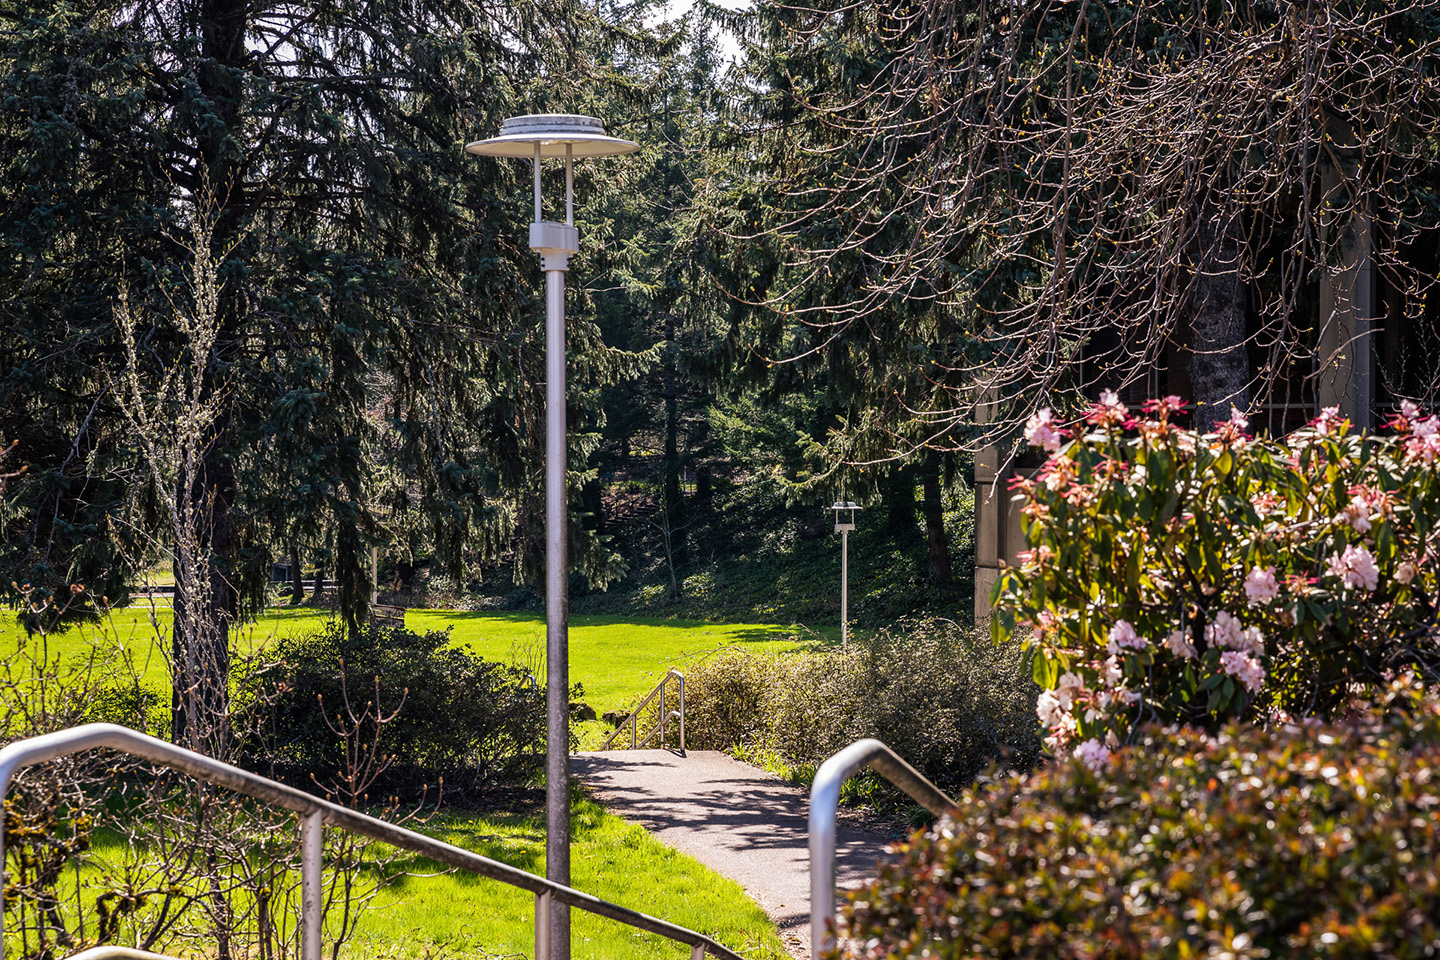 Lamp post on MHCC campus